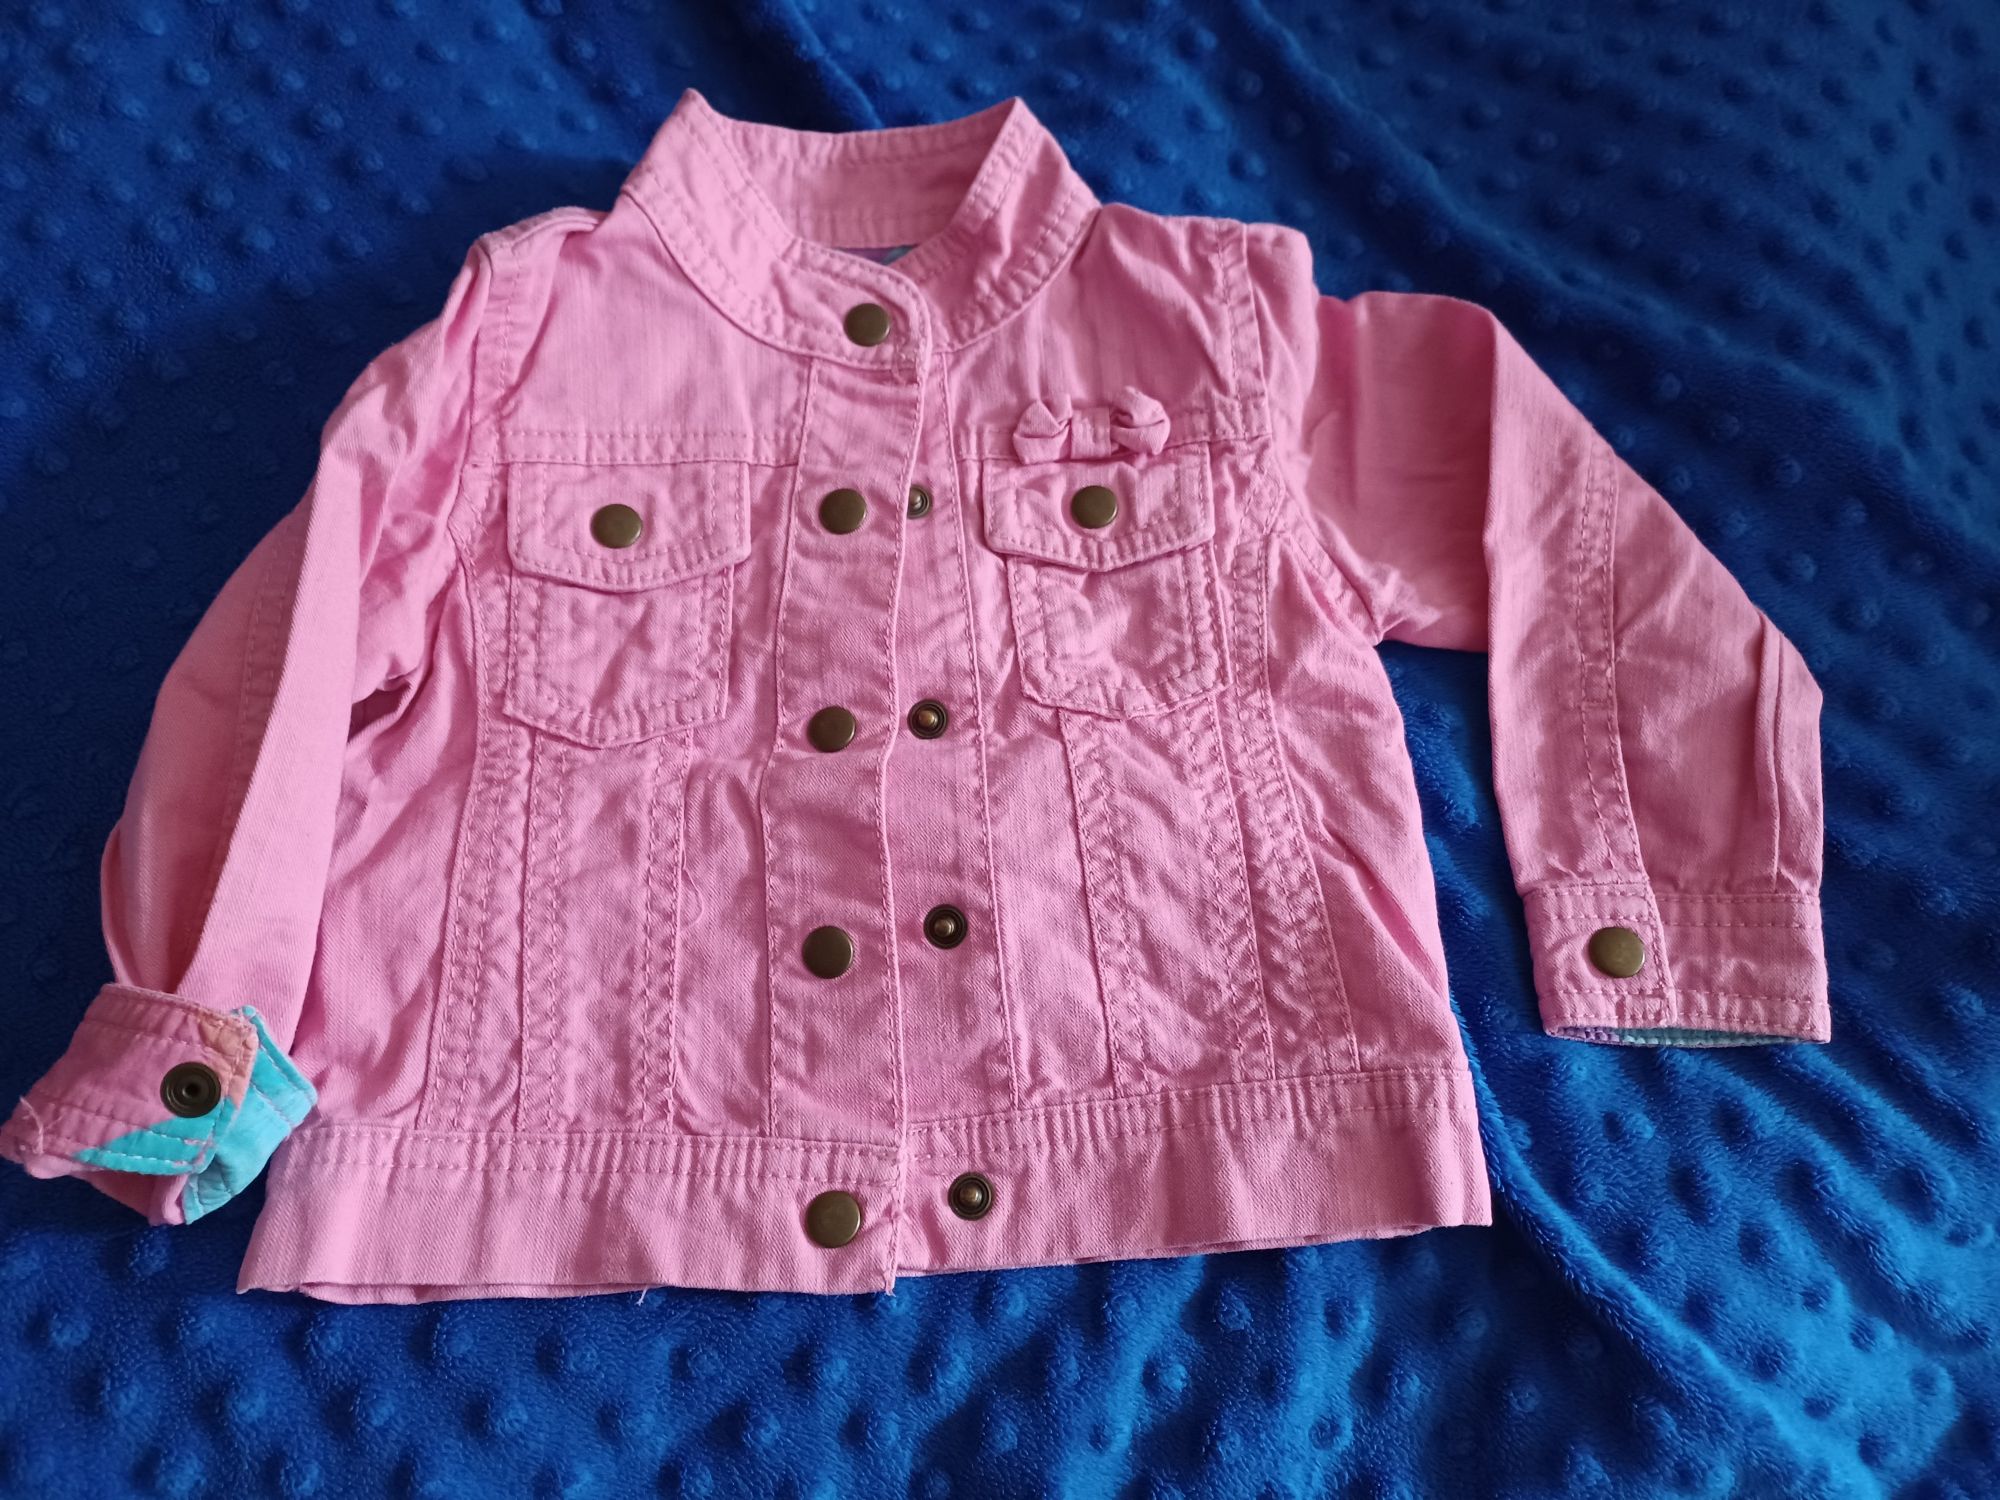 Fajna, w odcieniach różu,  jeansowa kurteczka.  80/86
INDIGO COLLECTIO